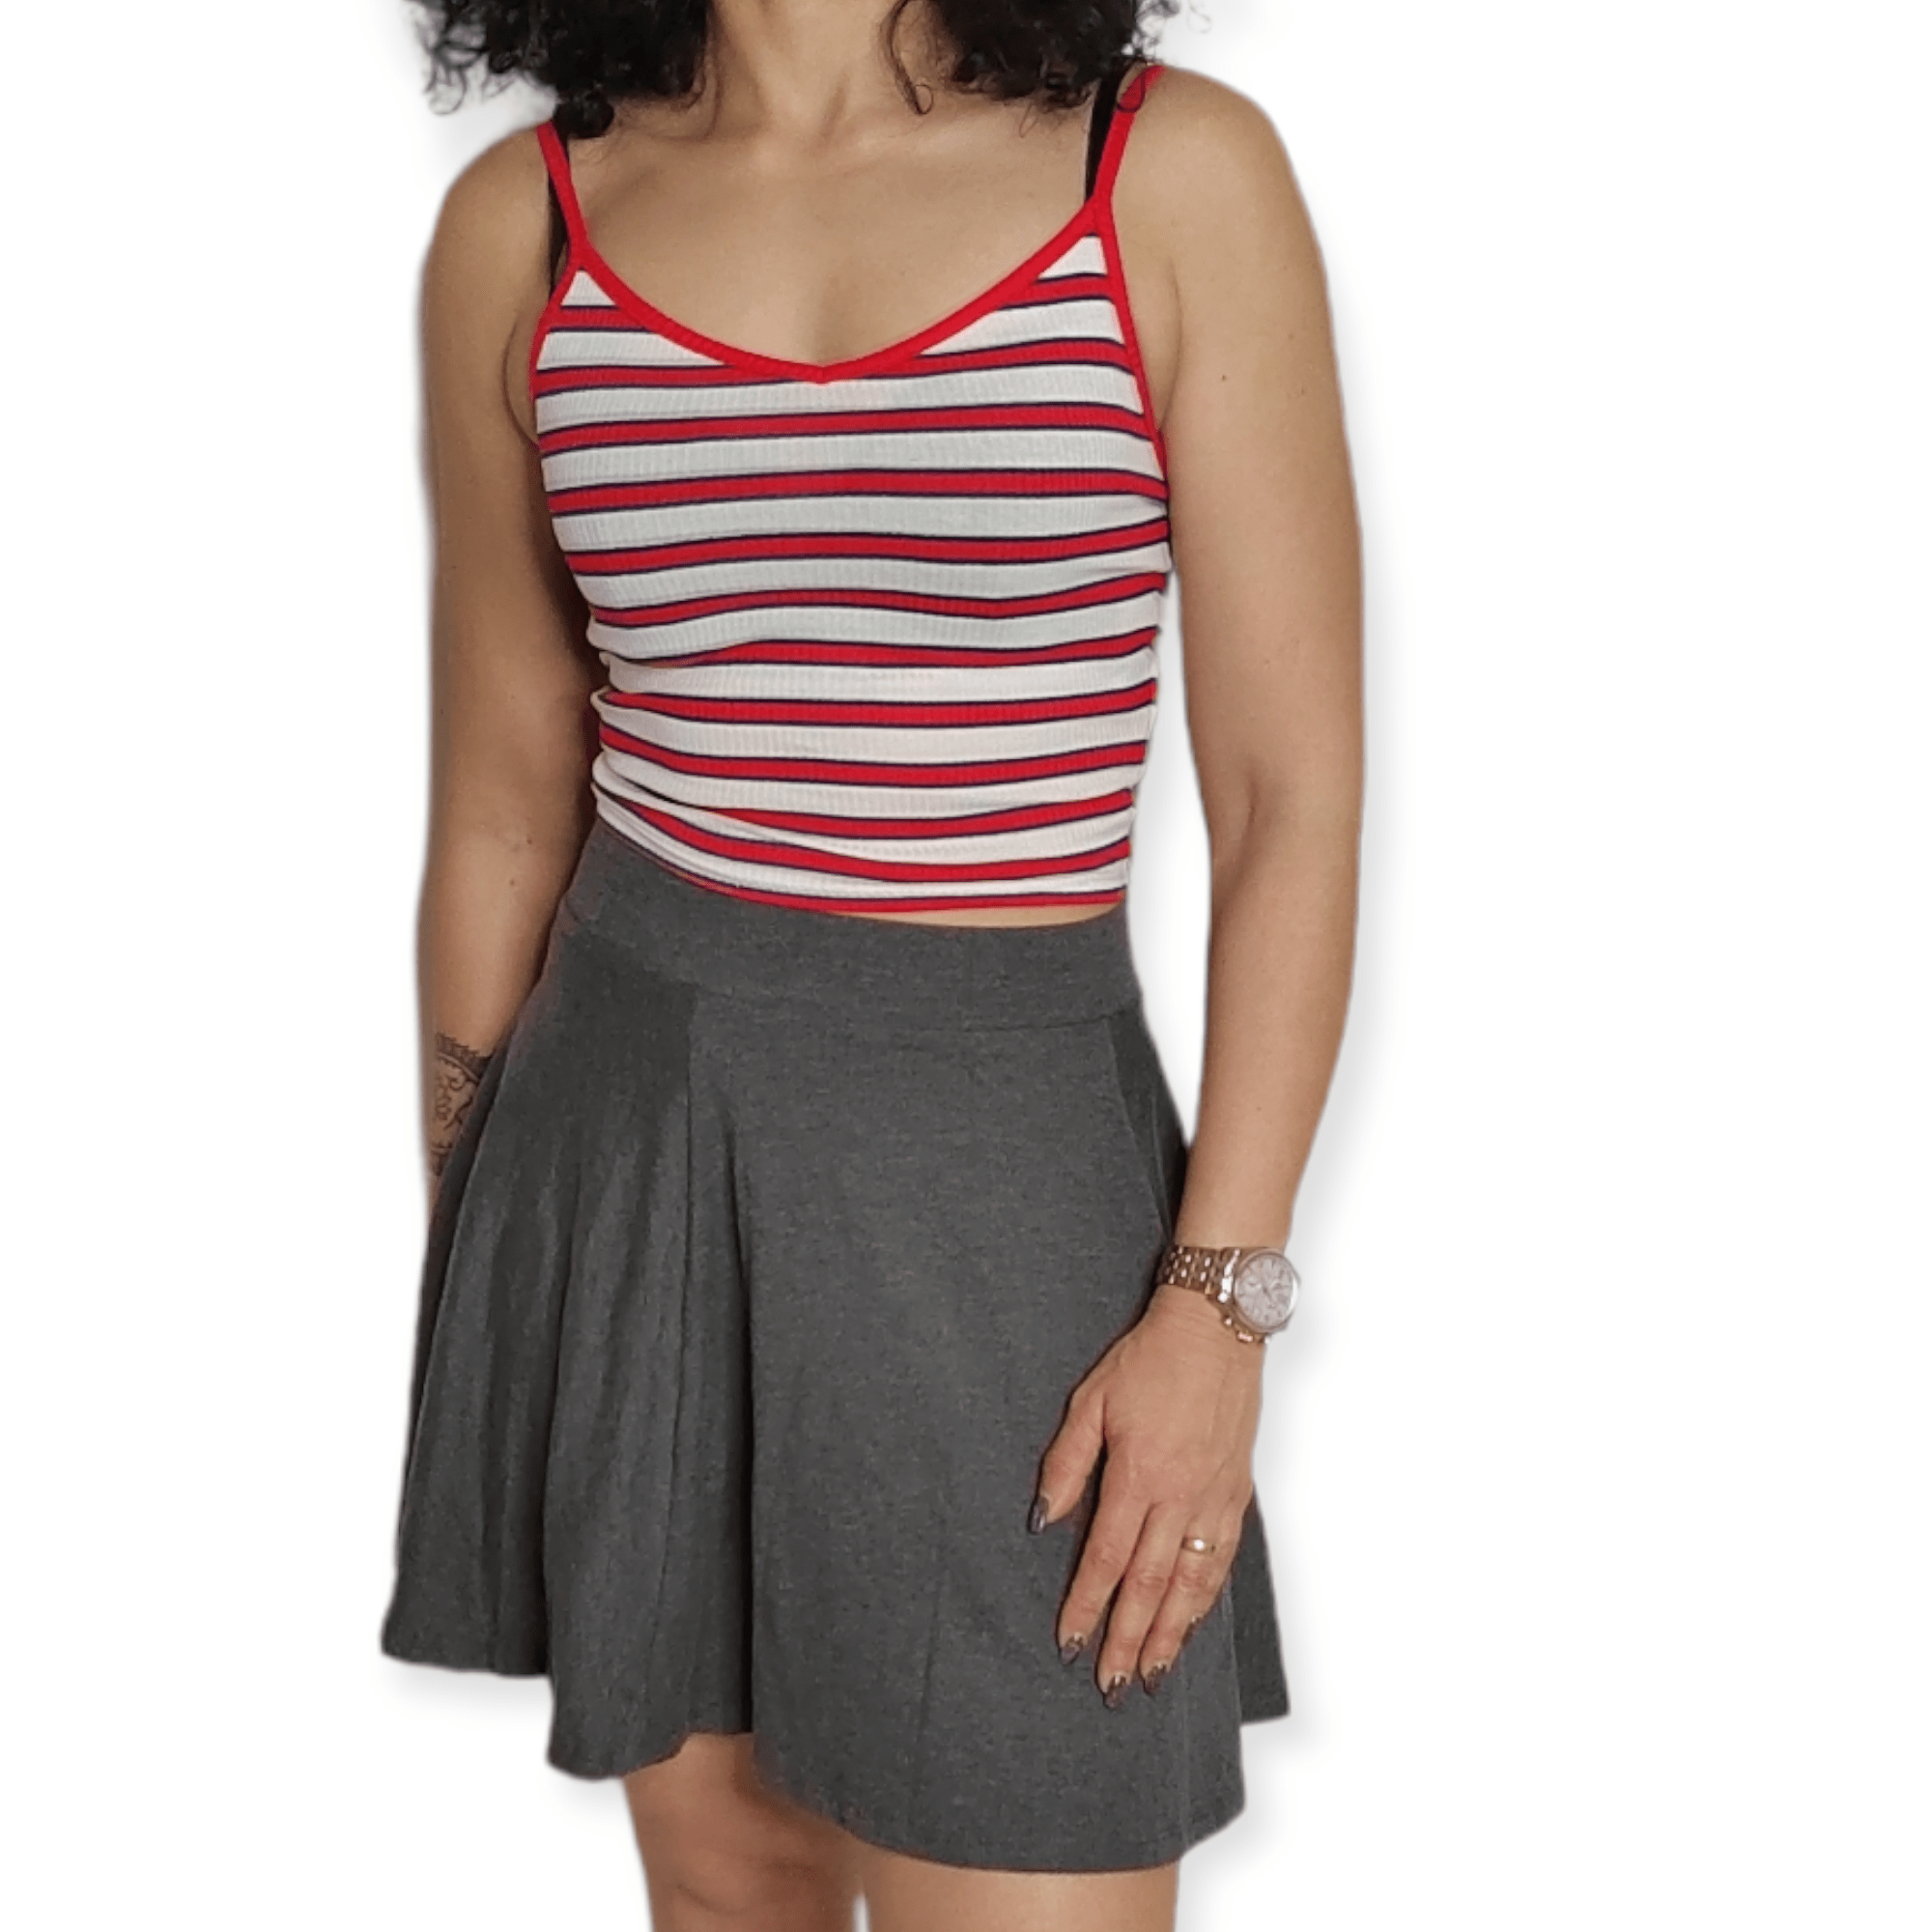 ElOutlet - Summer Women Women T-Shirts Women Crop-Top (Slim-Fit) - Strip Red / White / Dark Blue